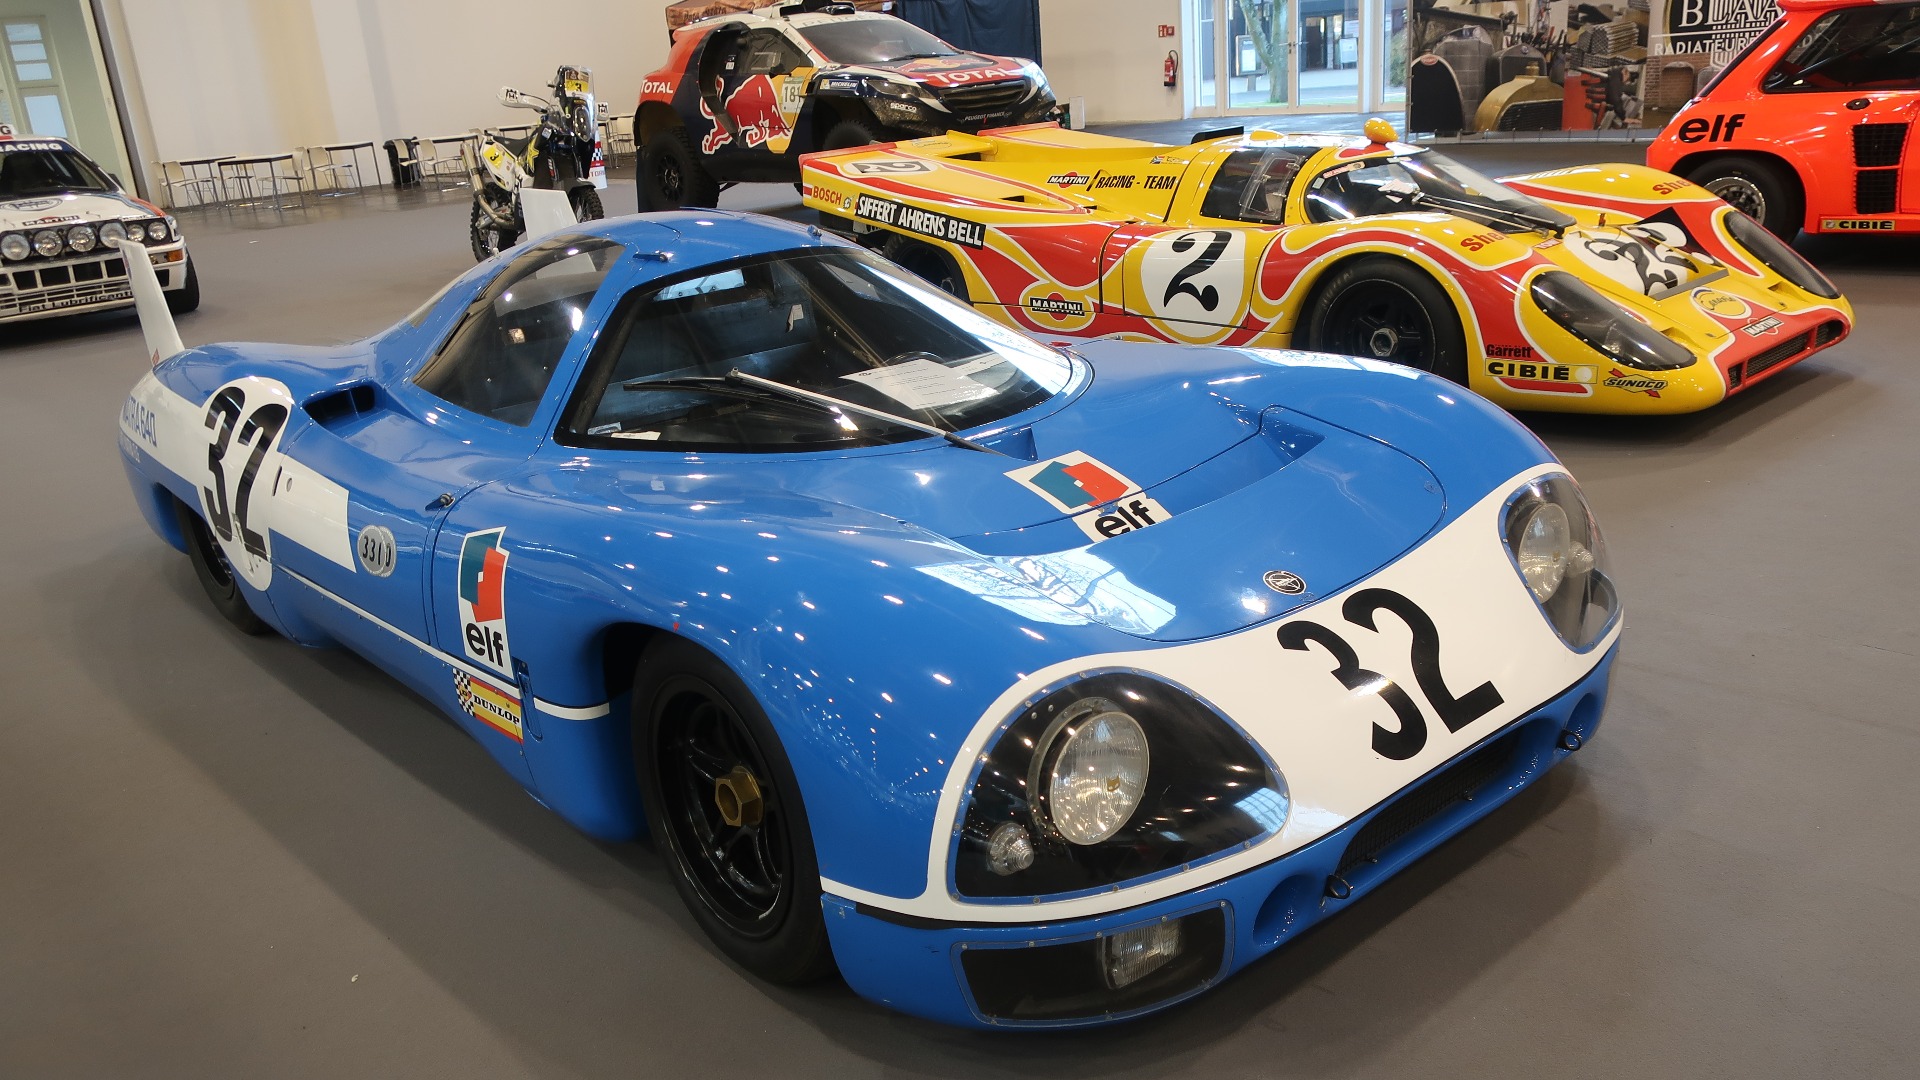 En Matra 640 prototype og en Porsche 917 i perfekt harmoni.